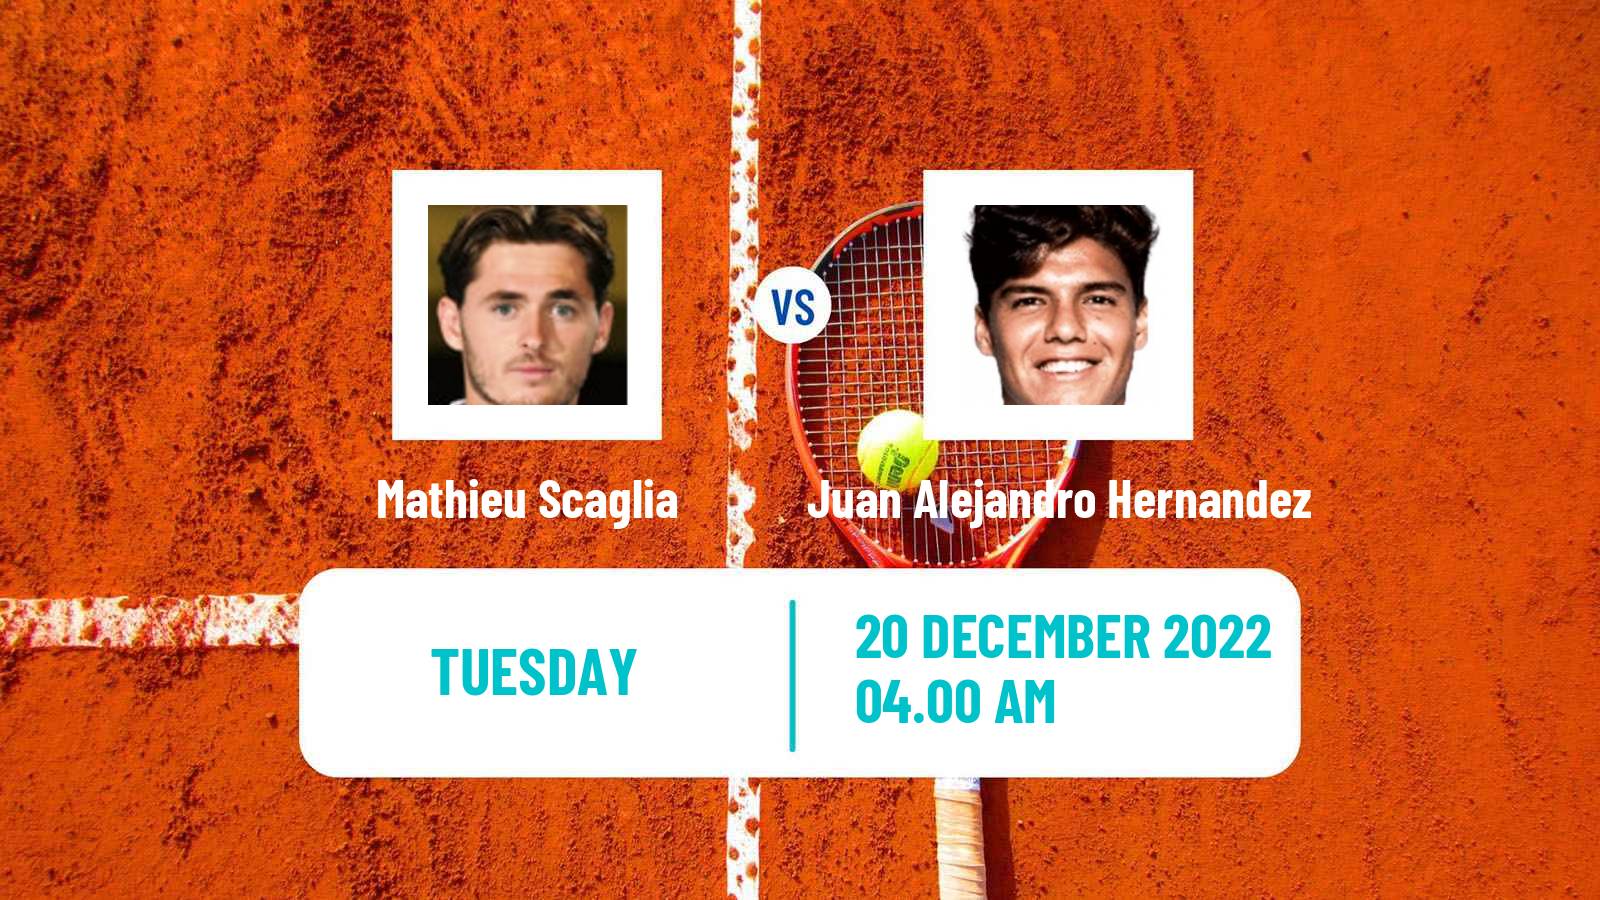 Tennis ITF Tournaments Mathieu Scaglia - Juan Alejandro Hernandez